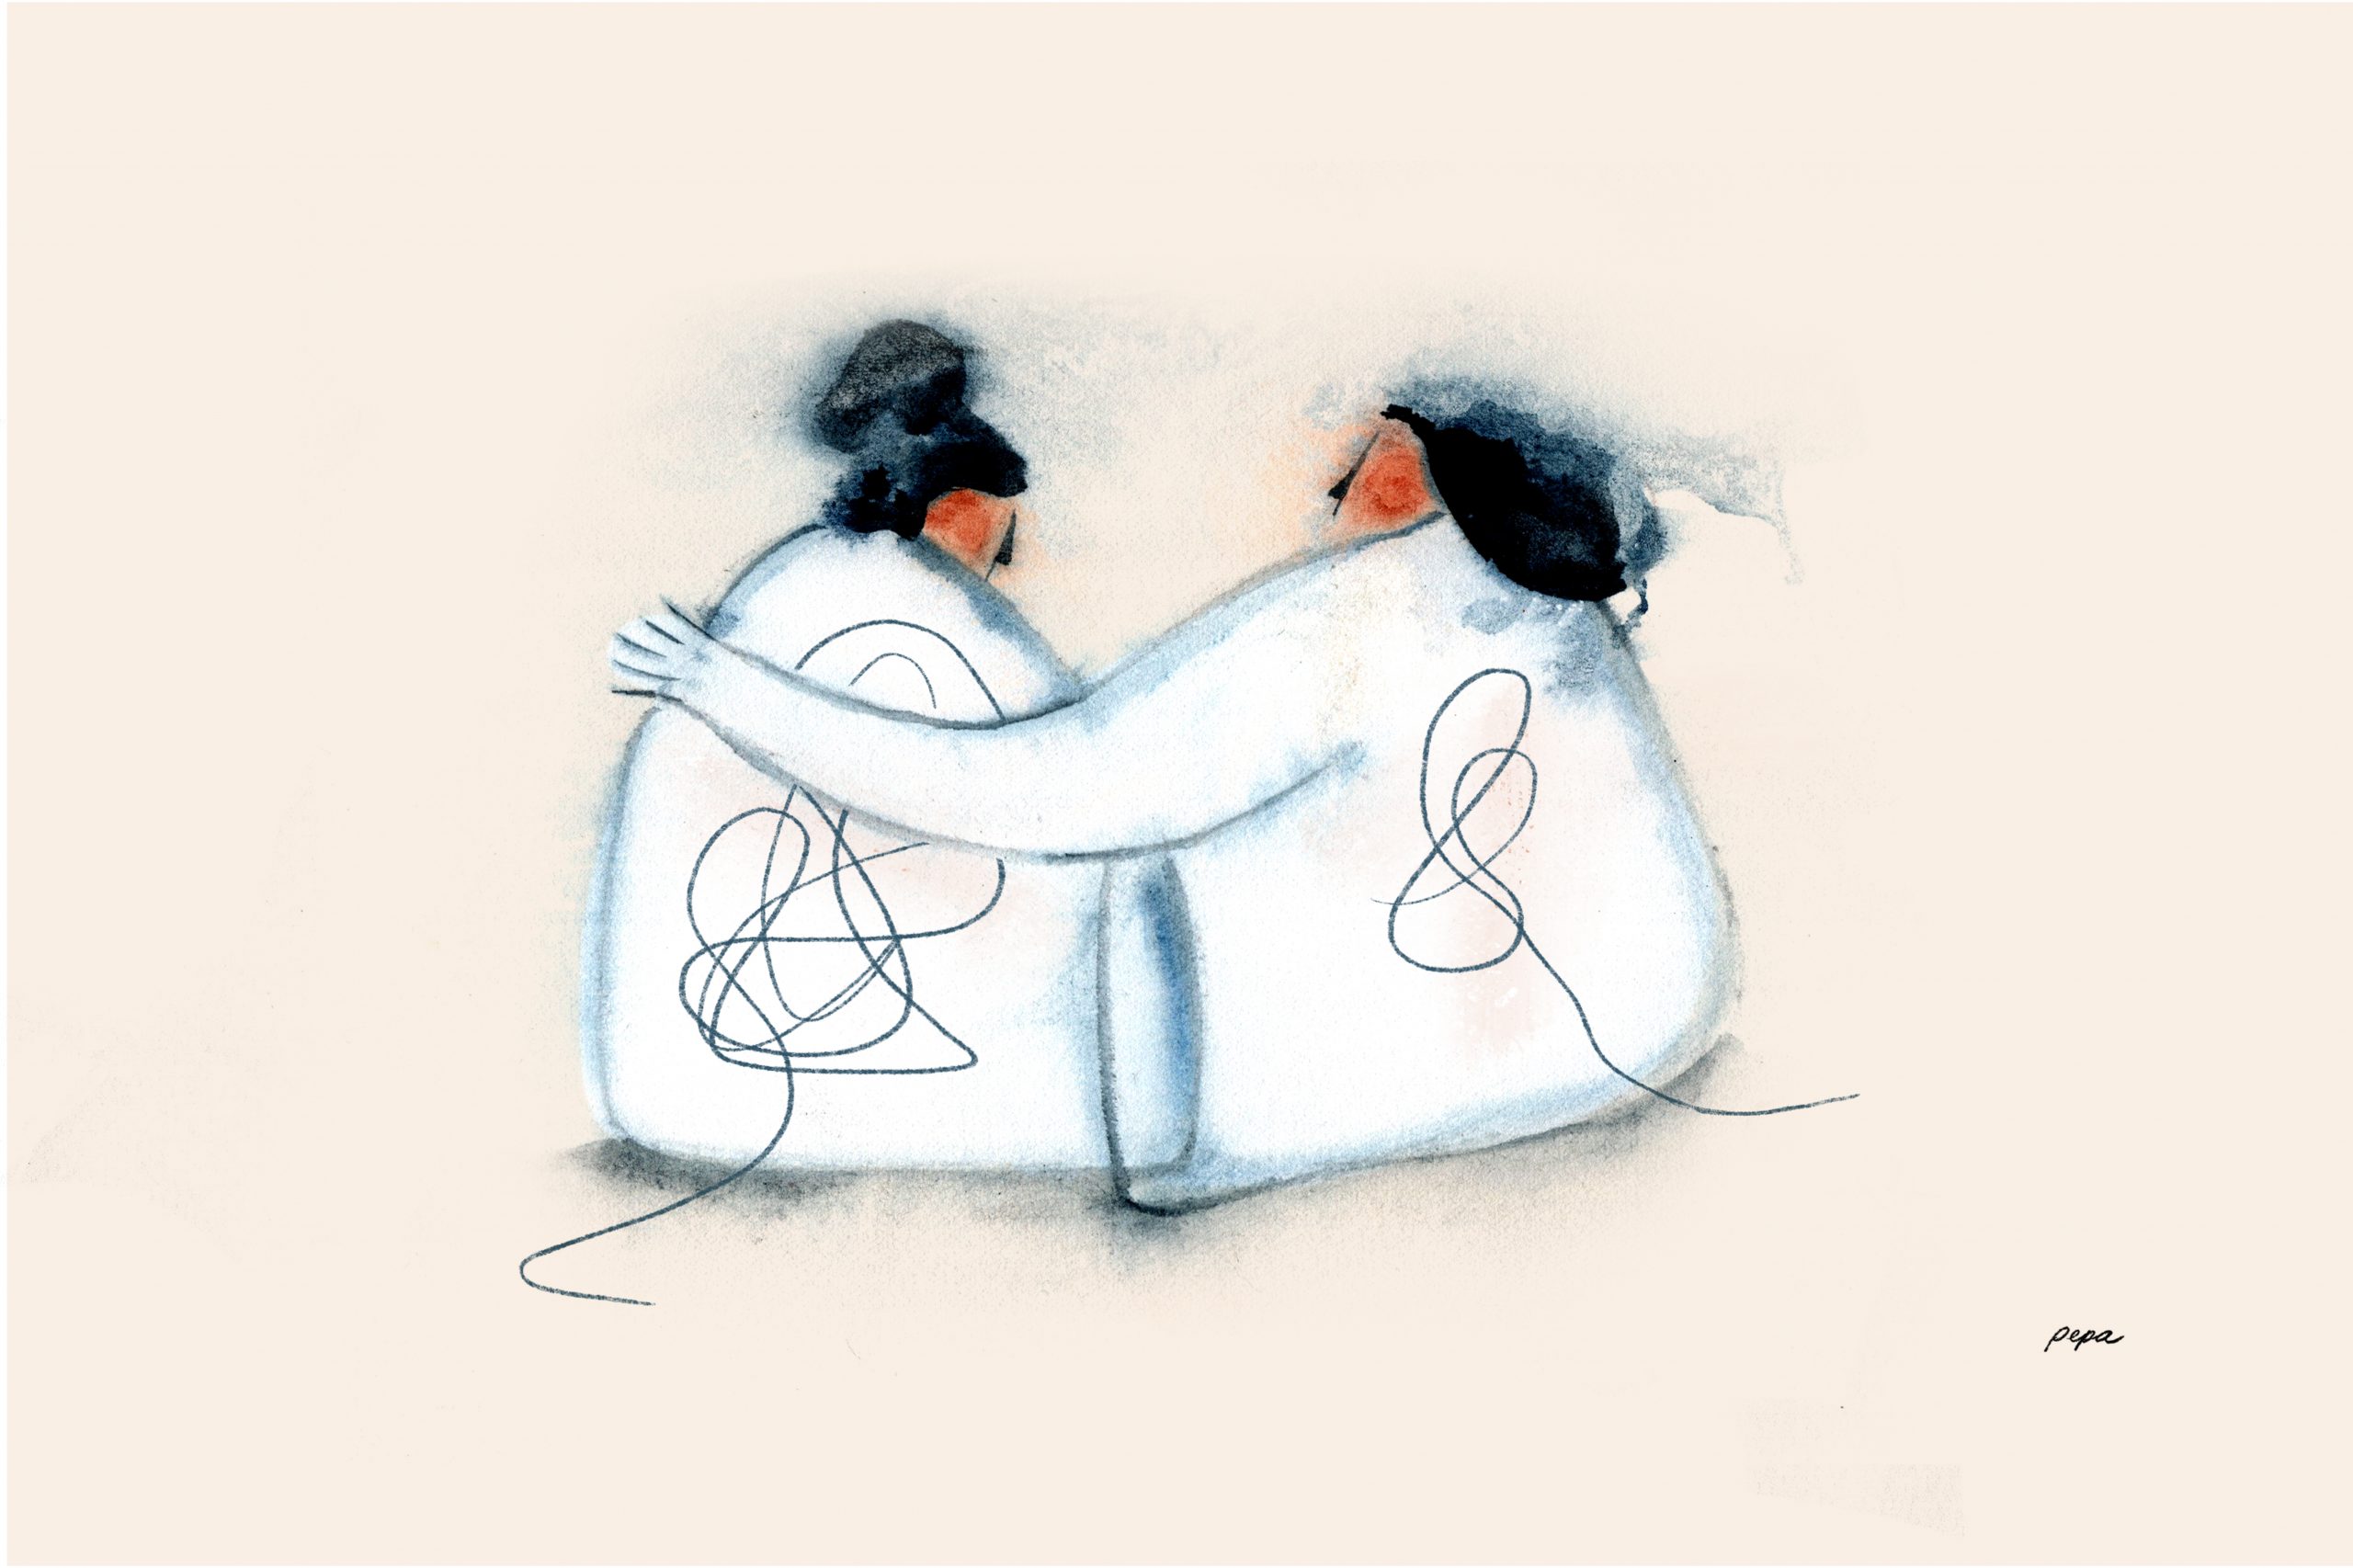 Madre e hija abrazadas. Ilustración del episodio "Una carta para mamá" de Radio Ambulante